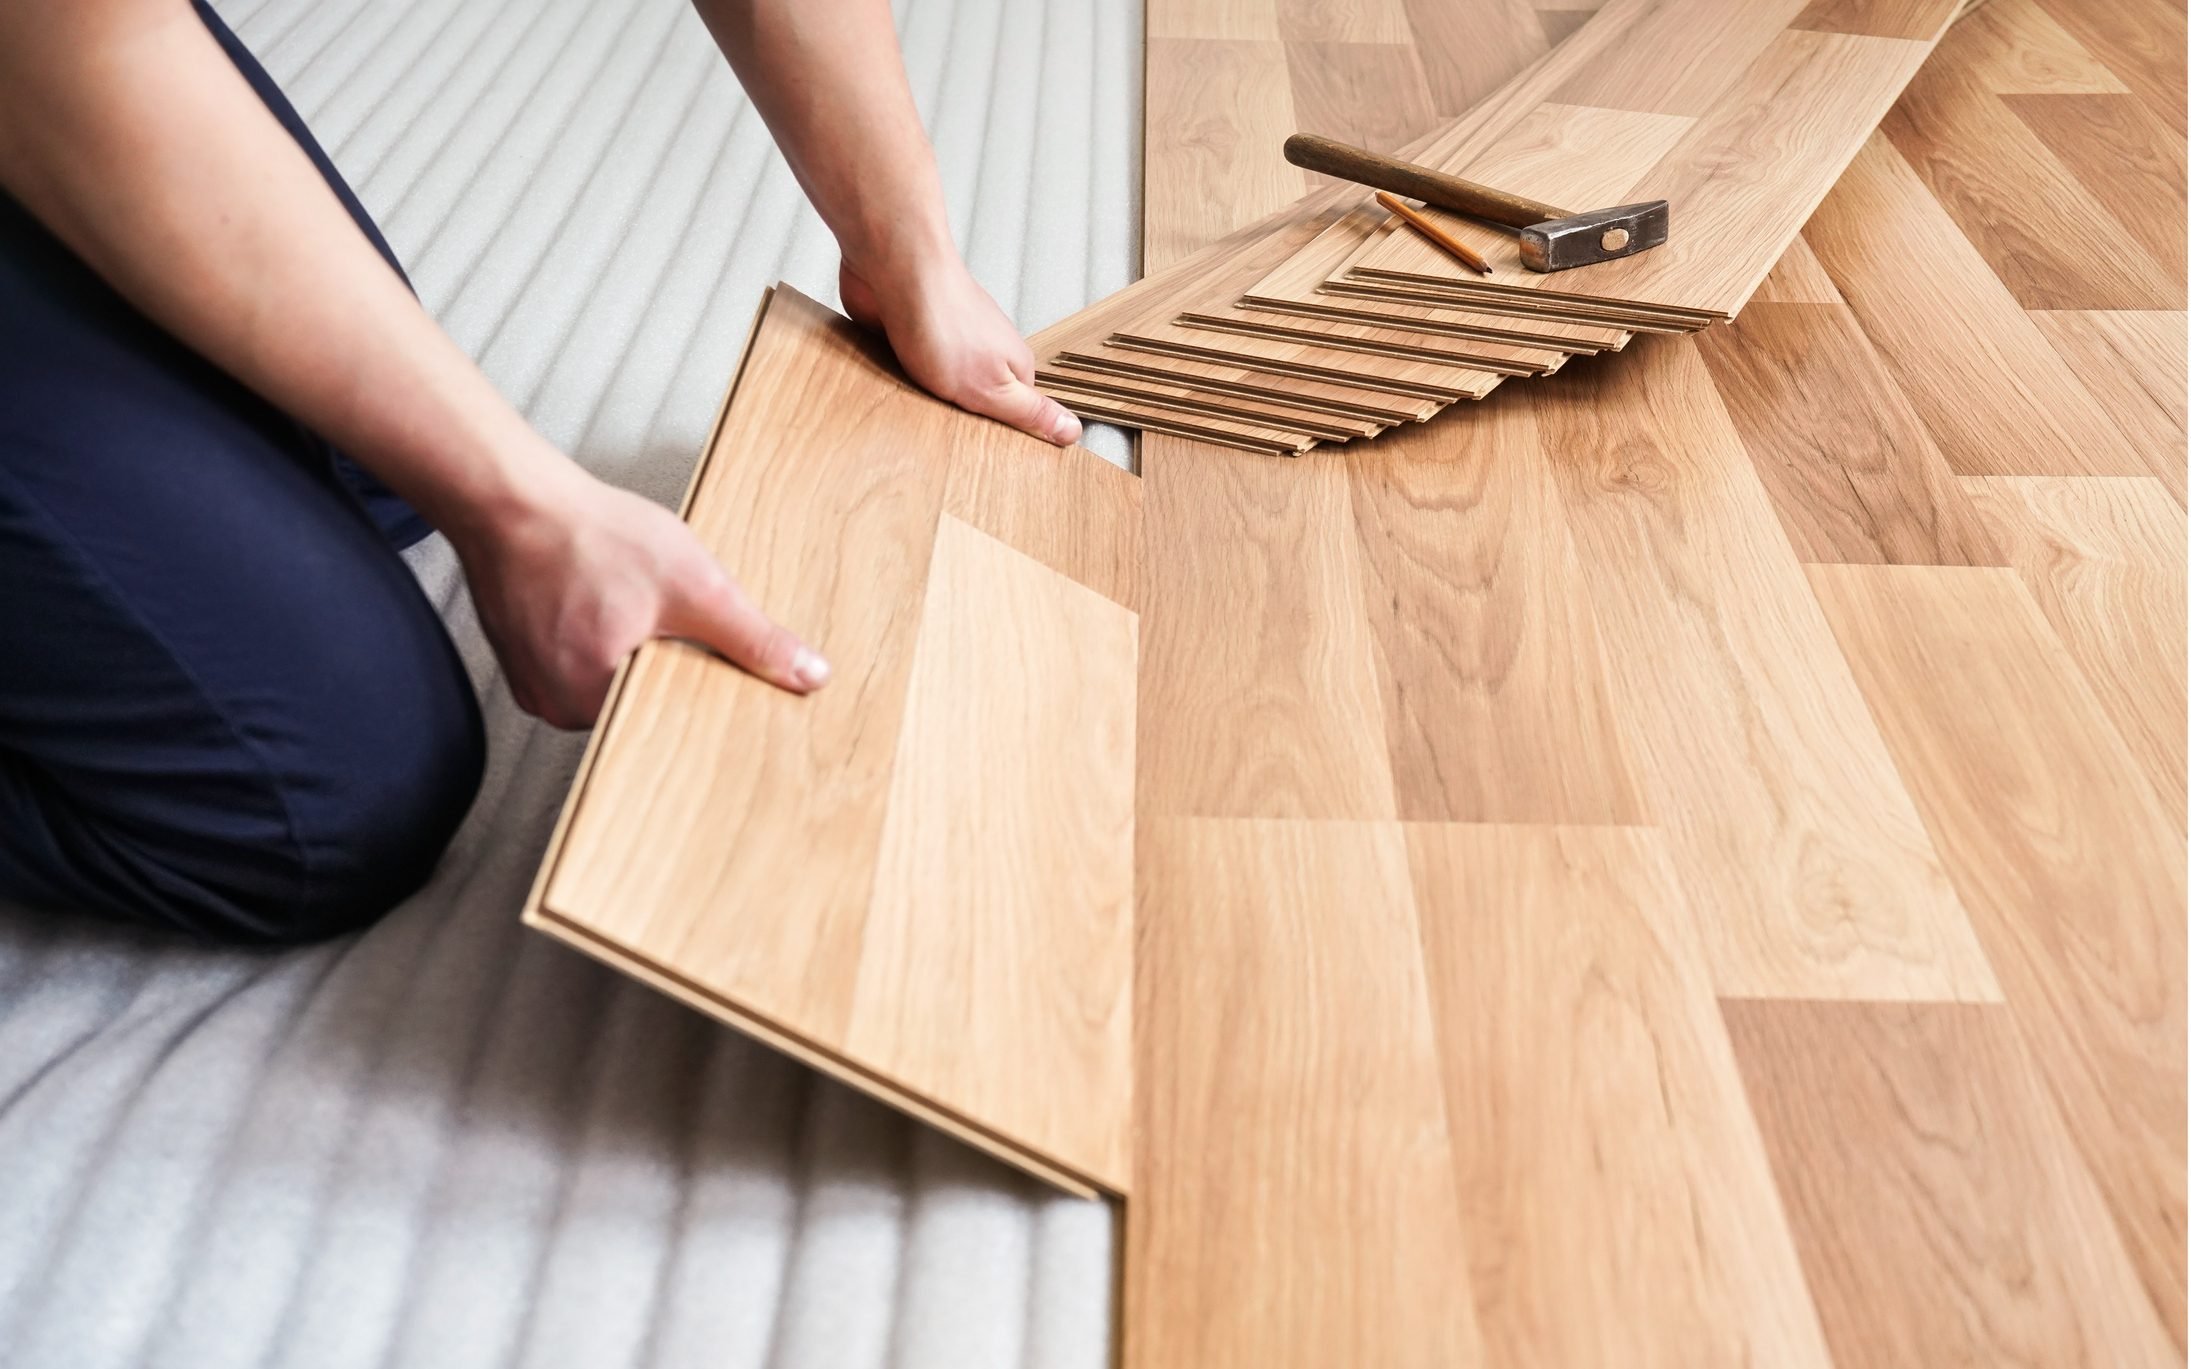 LVT and Plank Installation Methods, Vinyl Flooring